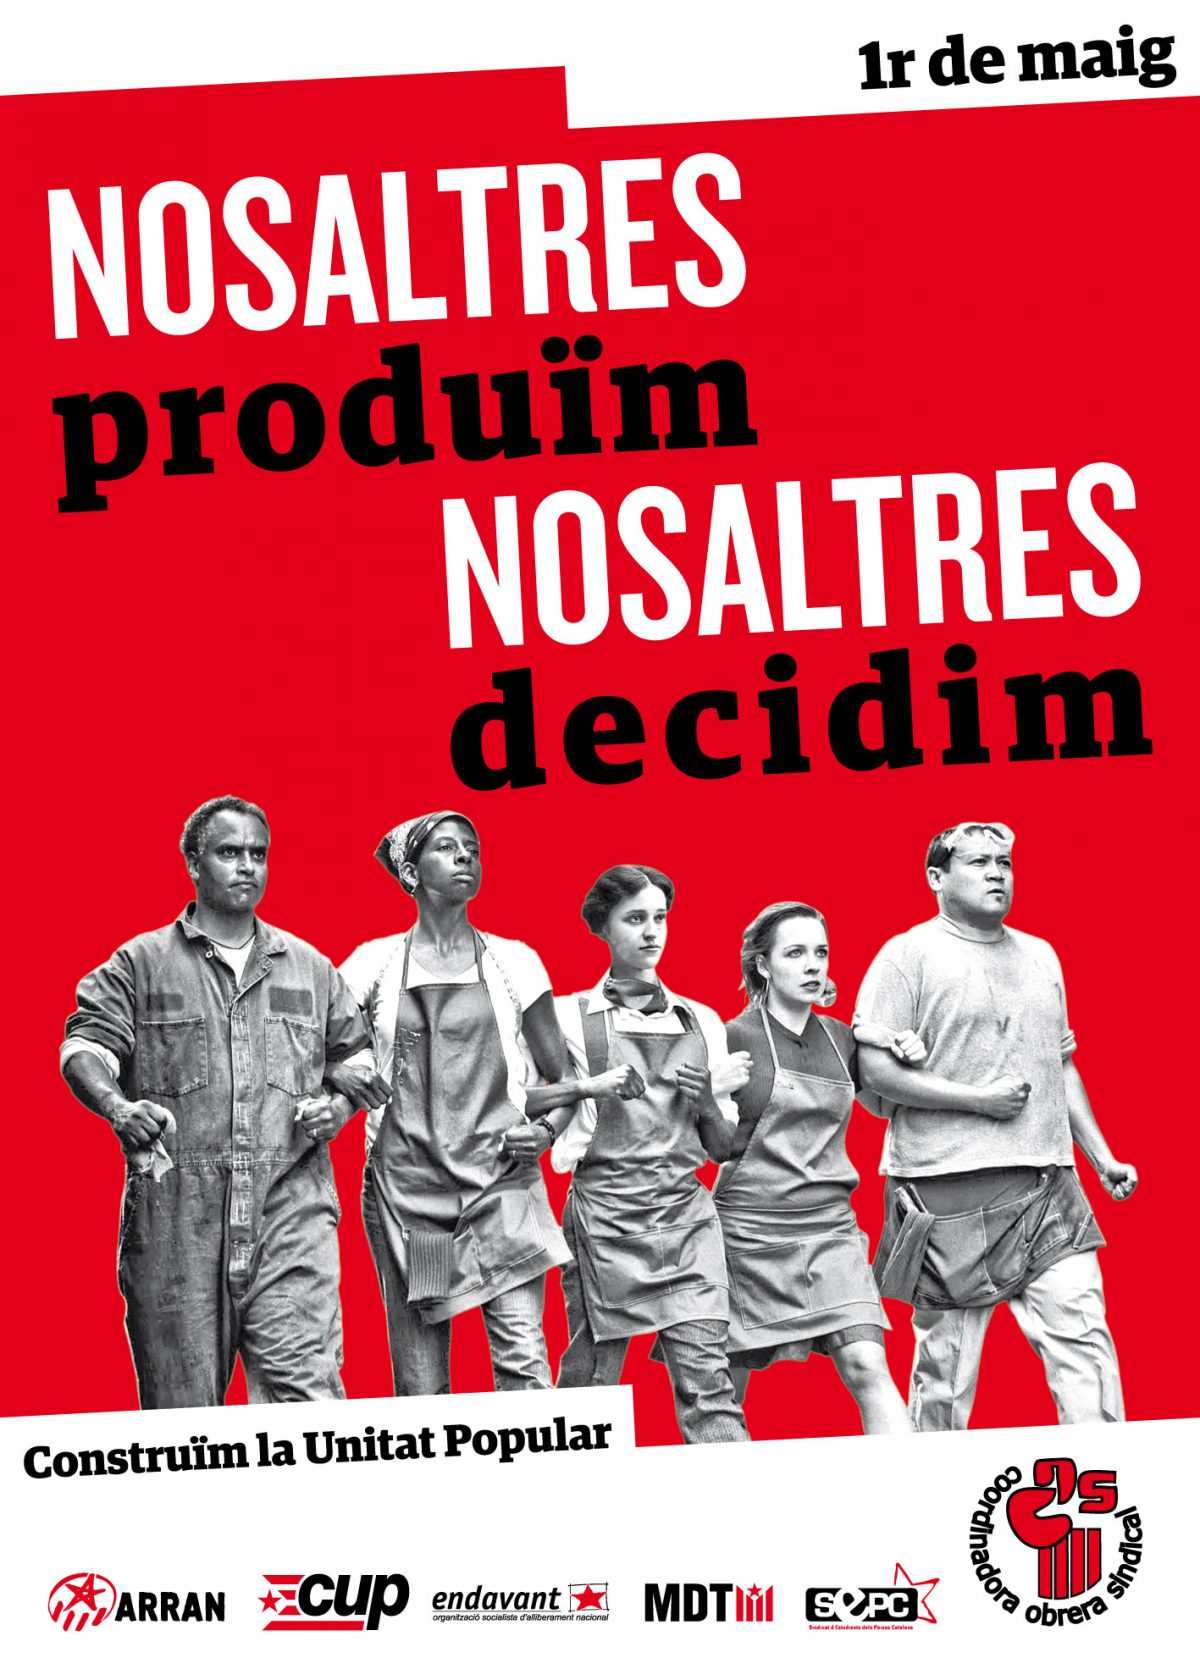 Mobilitzacions arreu dels Països Catalans en aquest 1 de maig